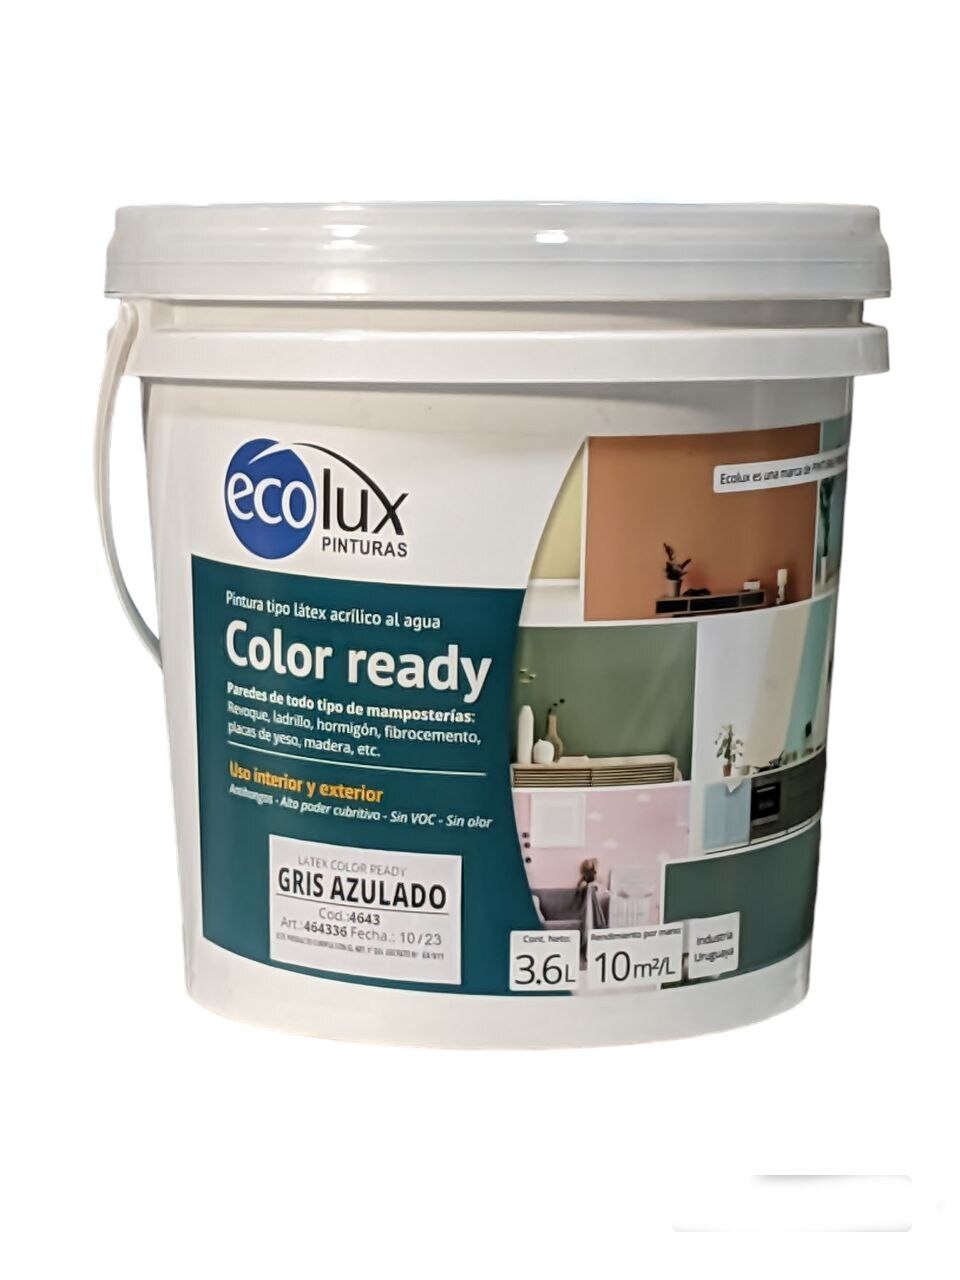 X 3.6 LT PROMET- Color Ready DURAZNO ESP. (463536) LATEX INT/EXT. ECOLUX